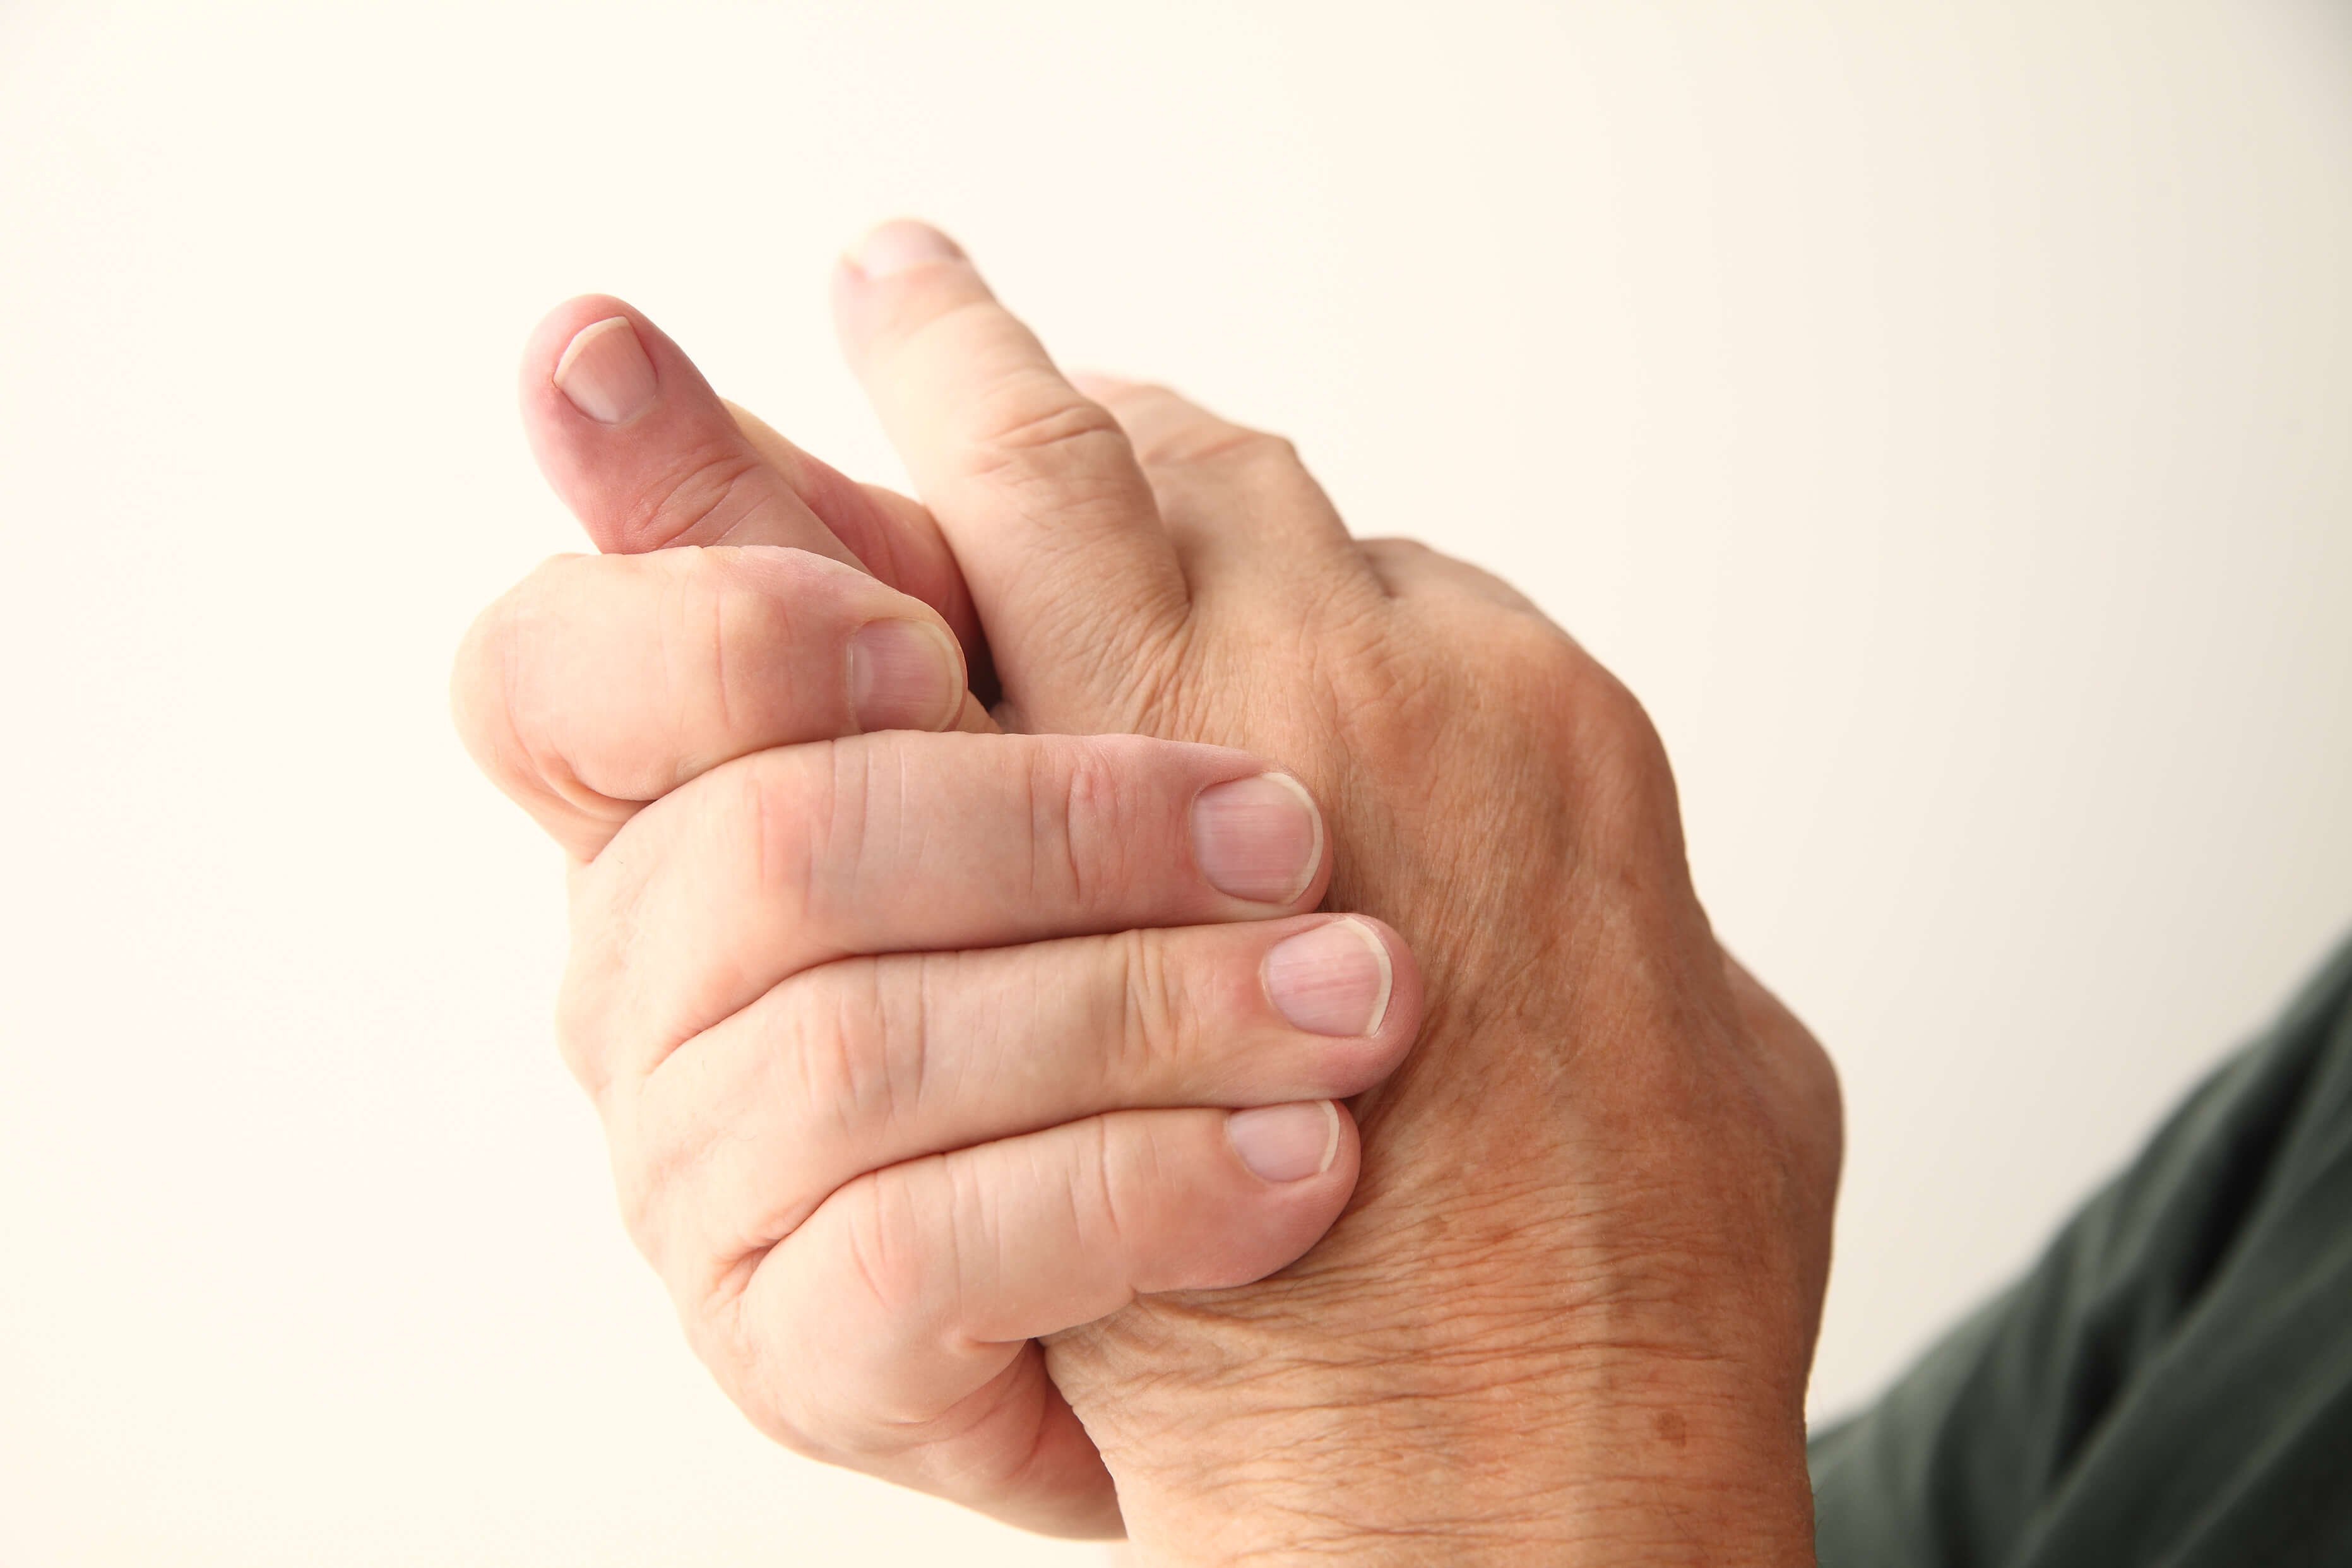 Man's arthritis affects his hands